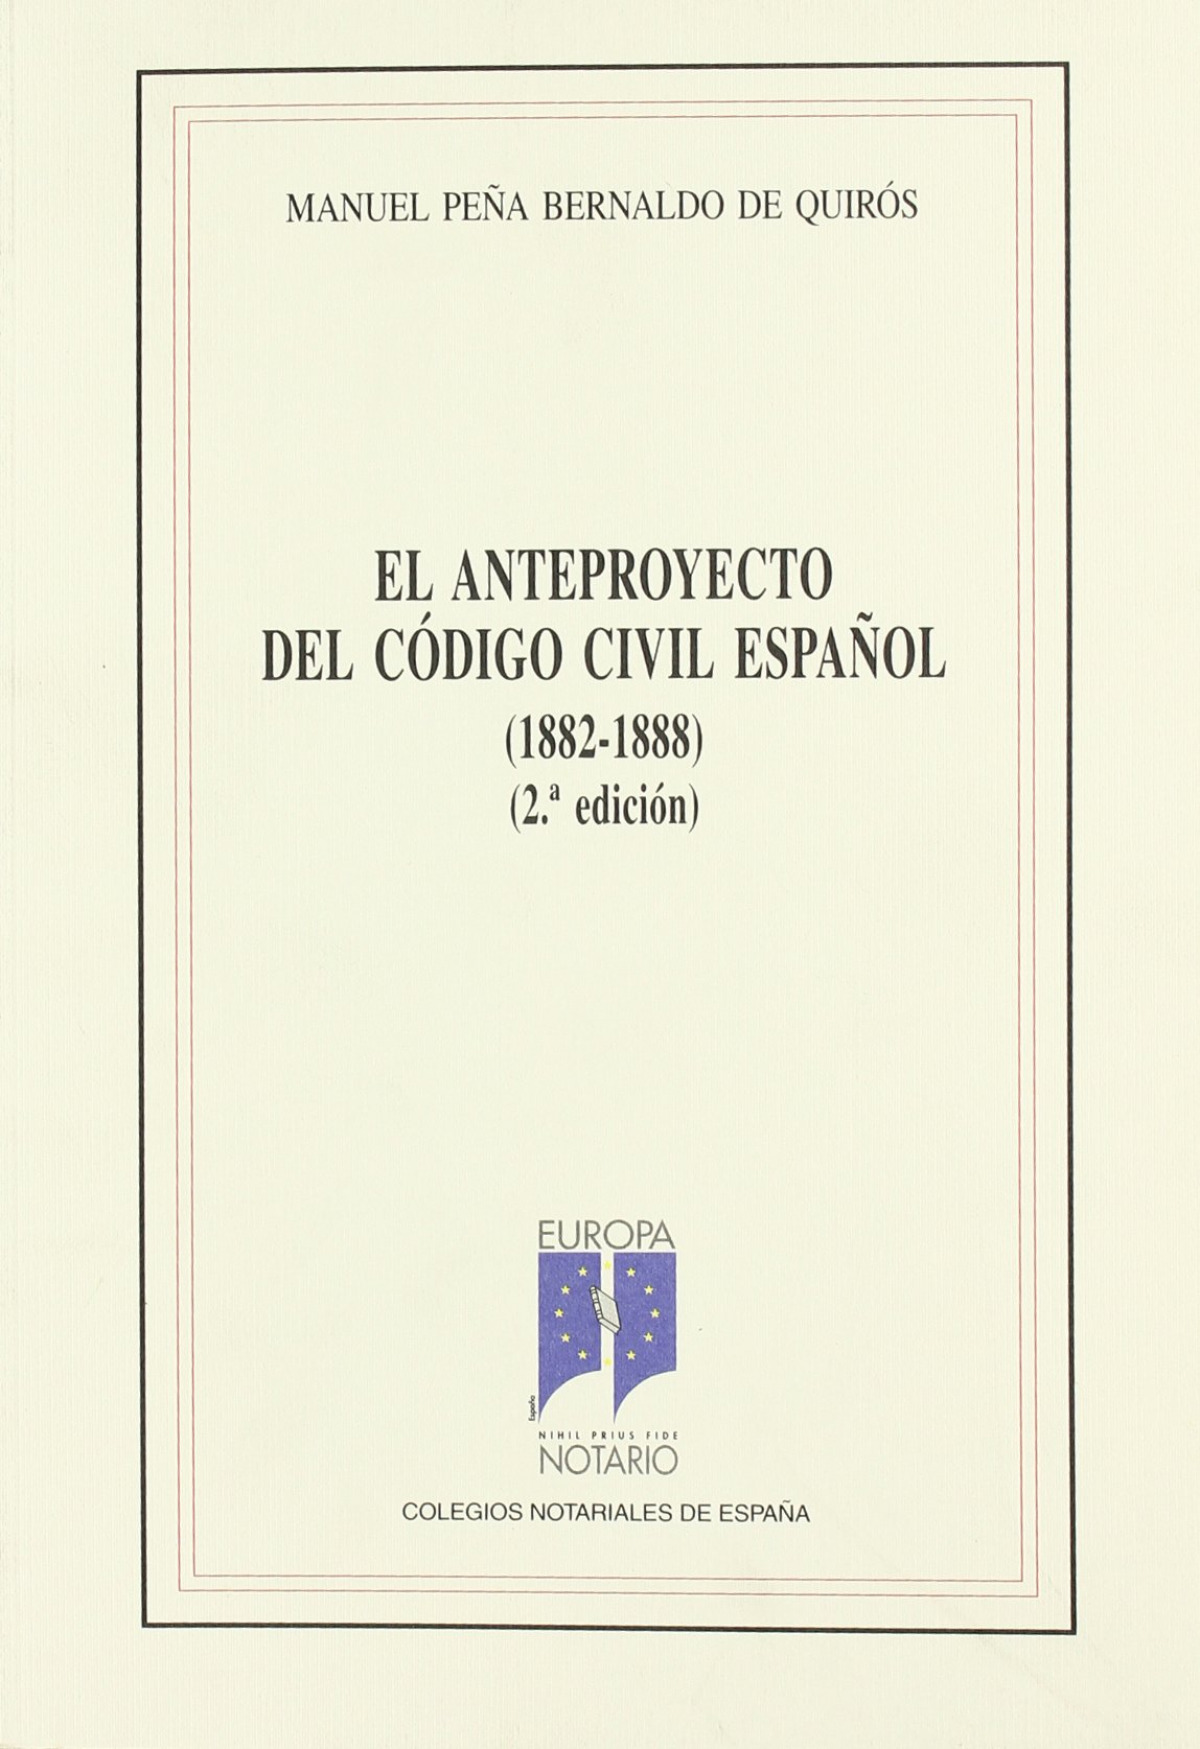 El anteproyecto del Código Civil español - Peña Bernaldo de Quirós, Manuel